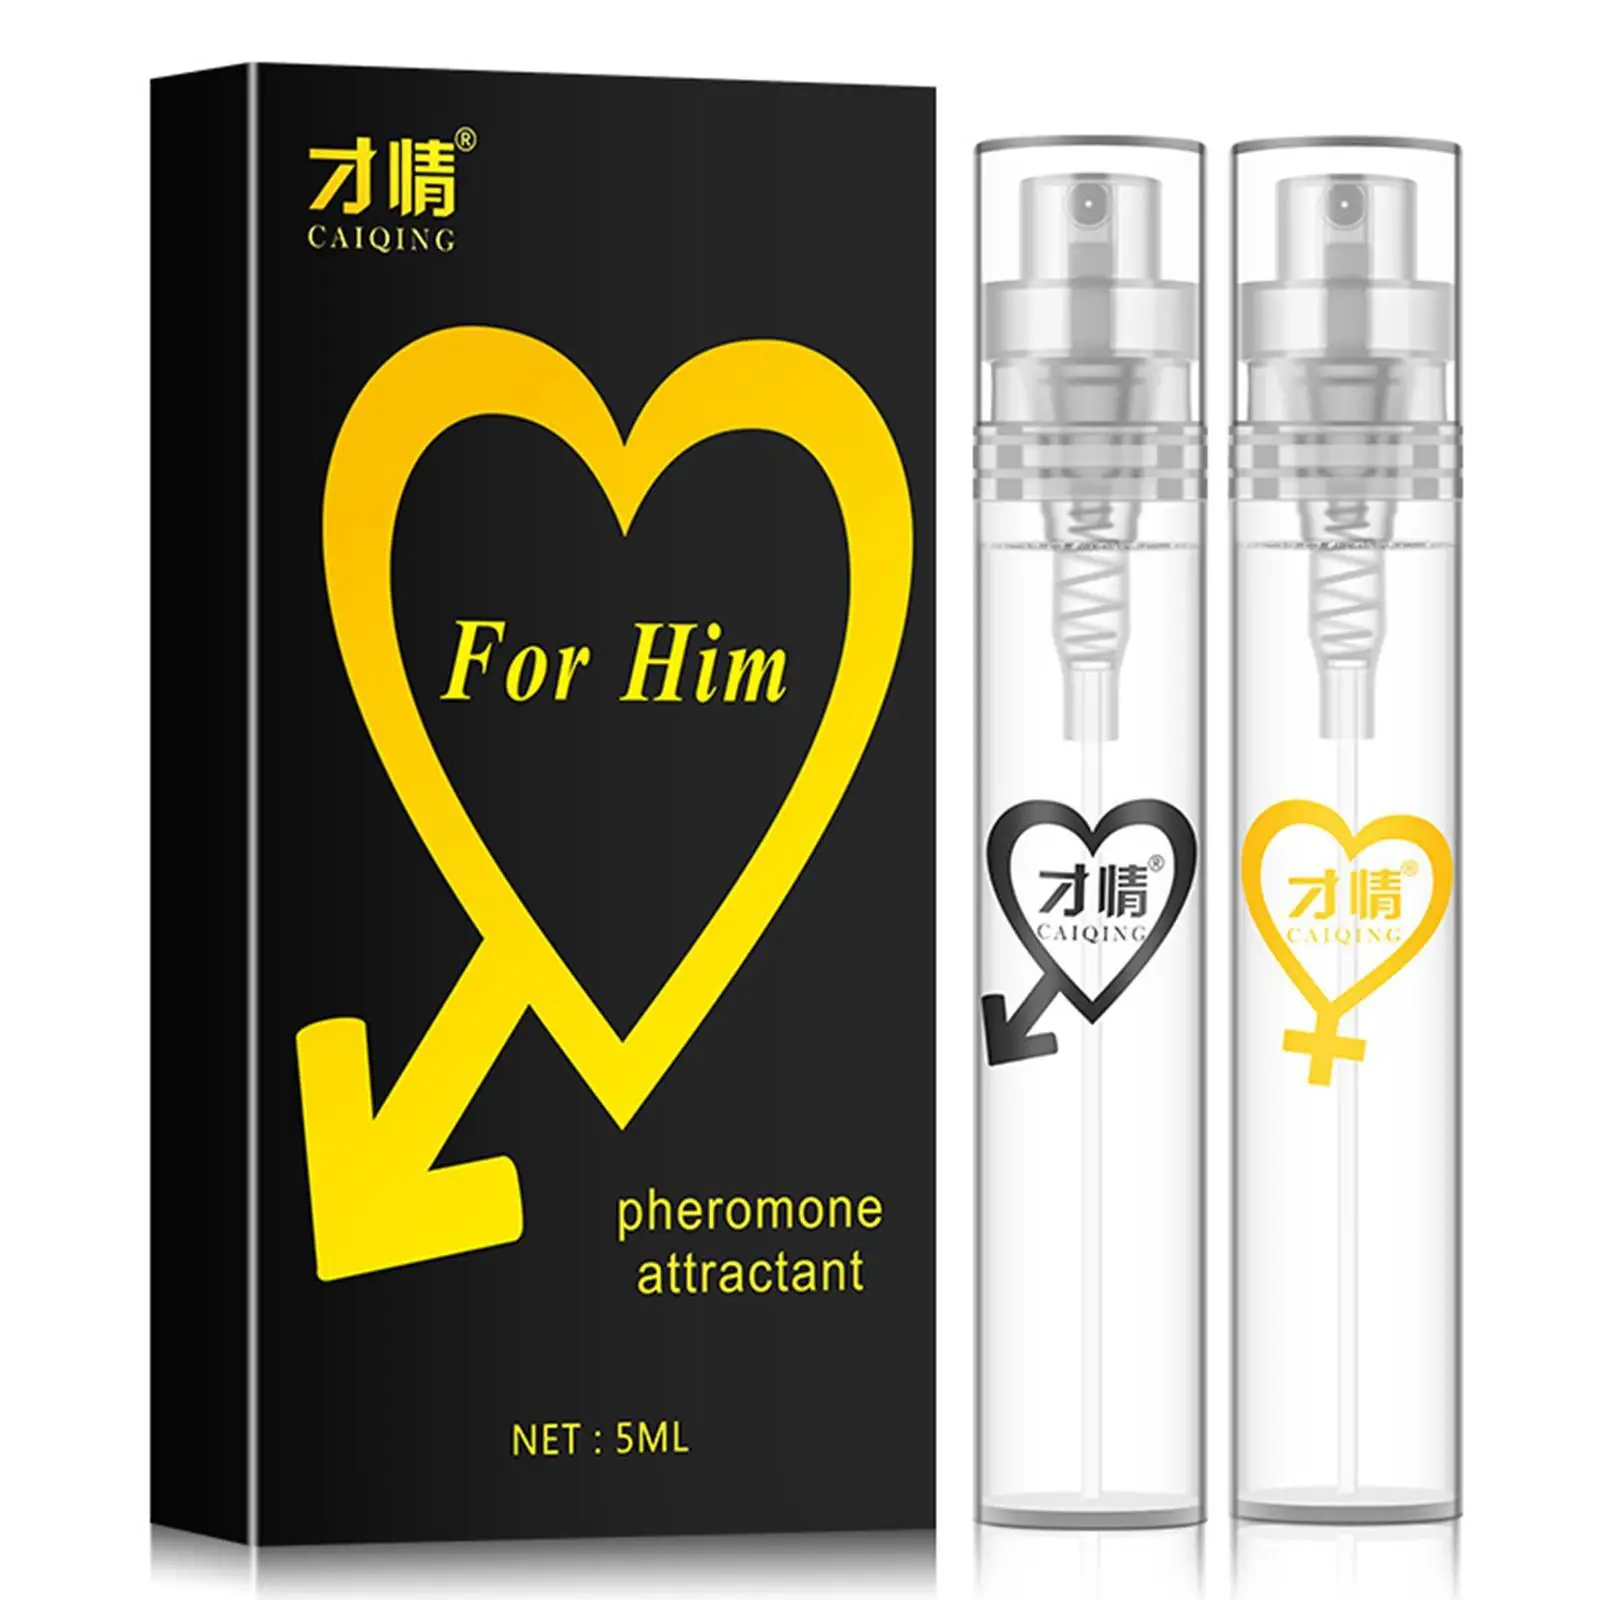 בושם פרומון עבור נשים גברים Parfum זוג מפלרטט Attractant סקסי בשמים לאורך זמן ניחוח הגוף ריח ספריי Dropship - 0